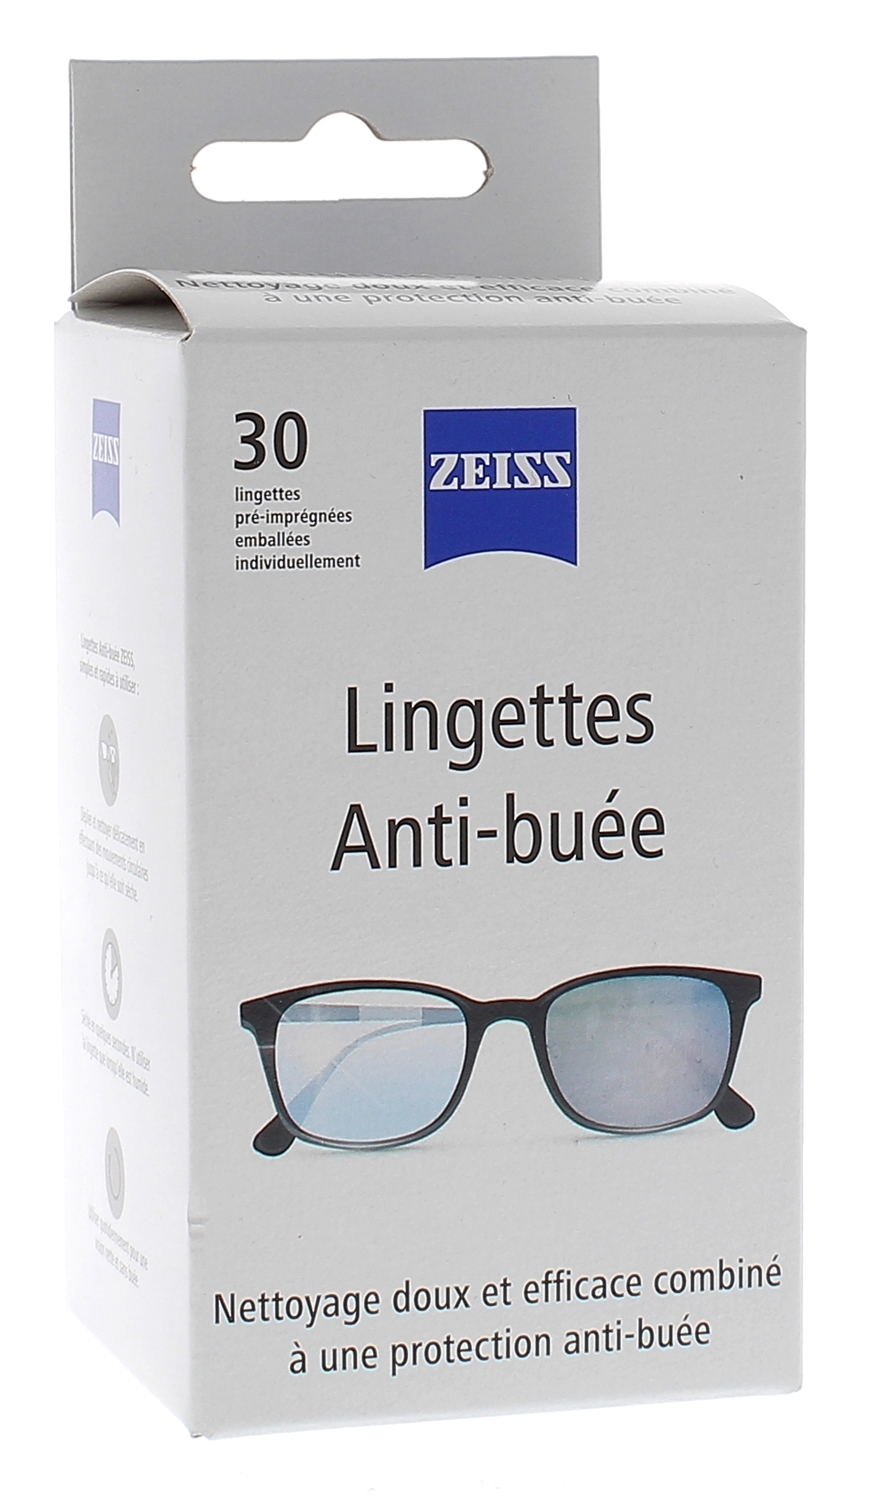 Zeiss lingettes anti-buée pour lunette Boite de 30